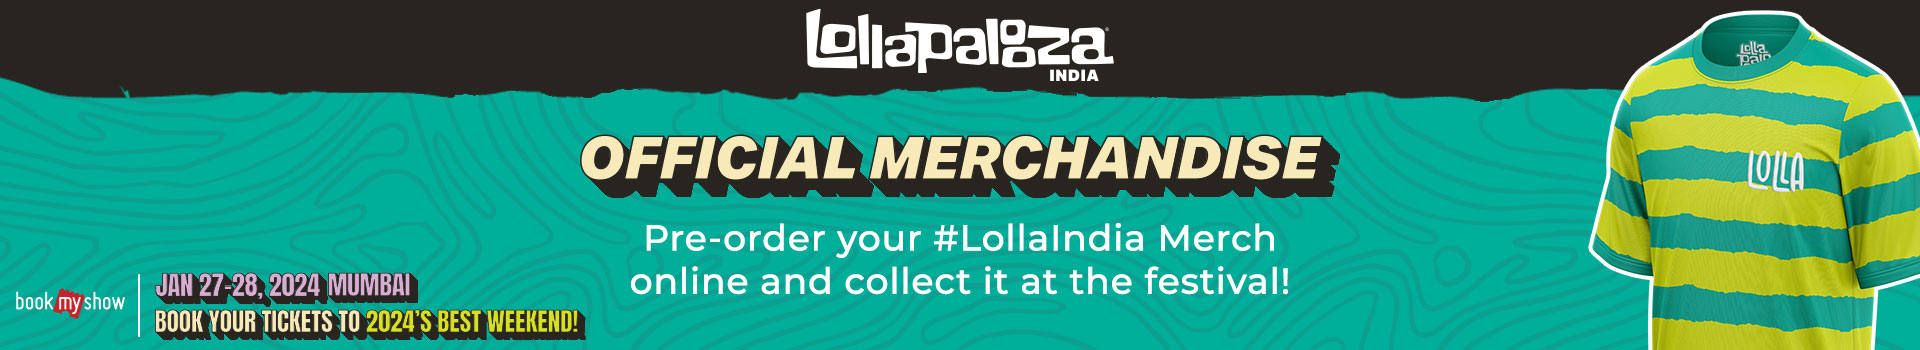 Lollapalooza Merchandise India